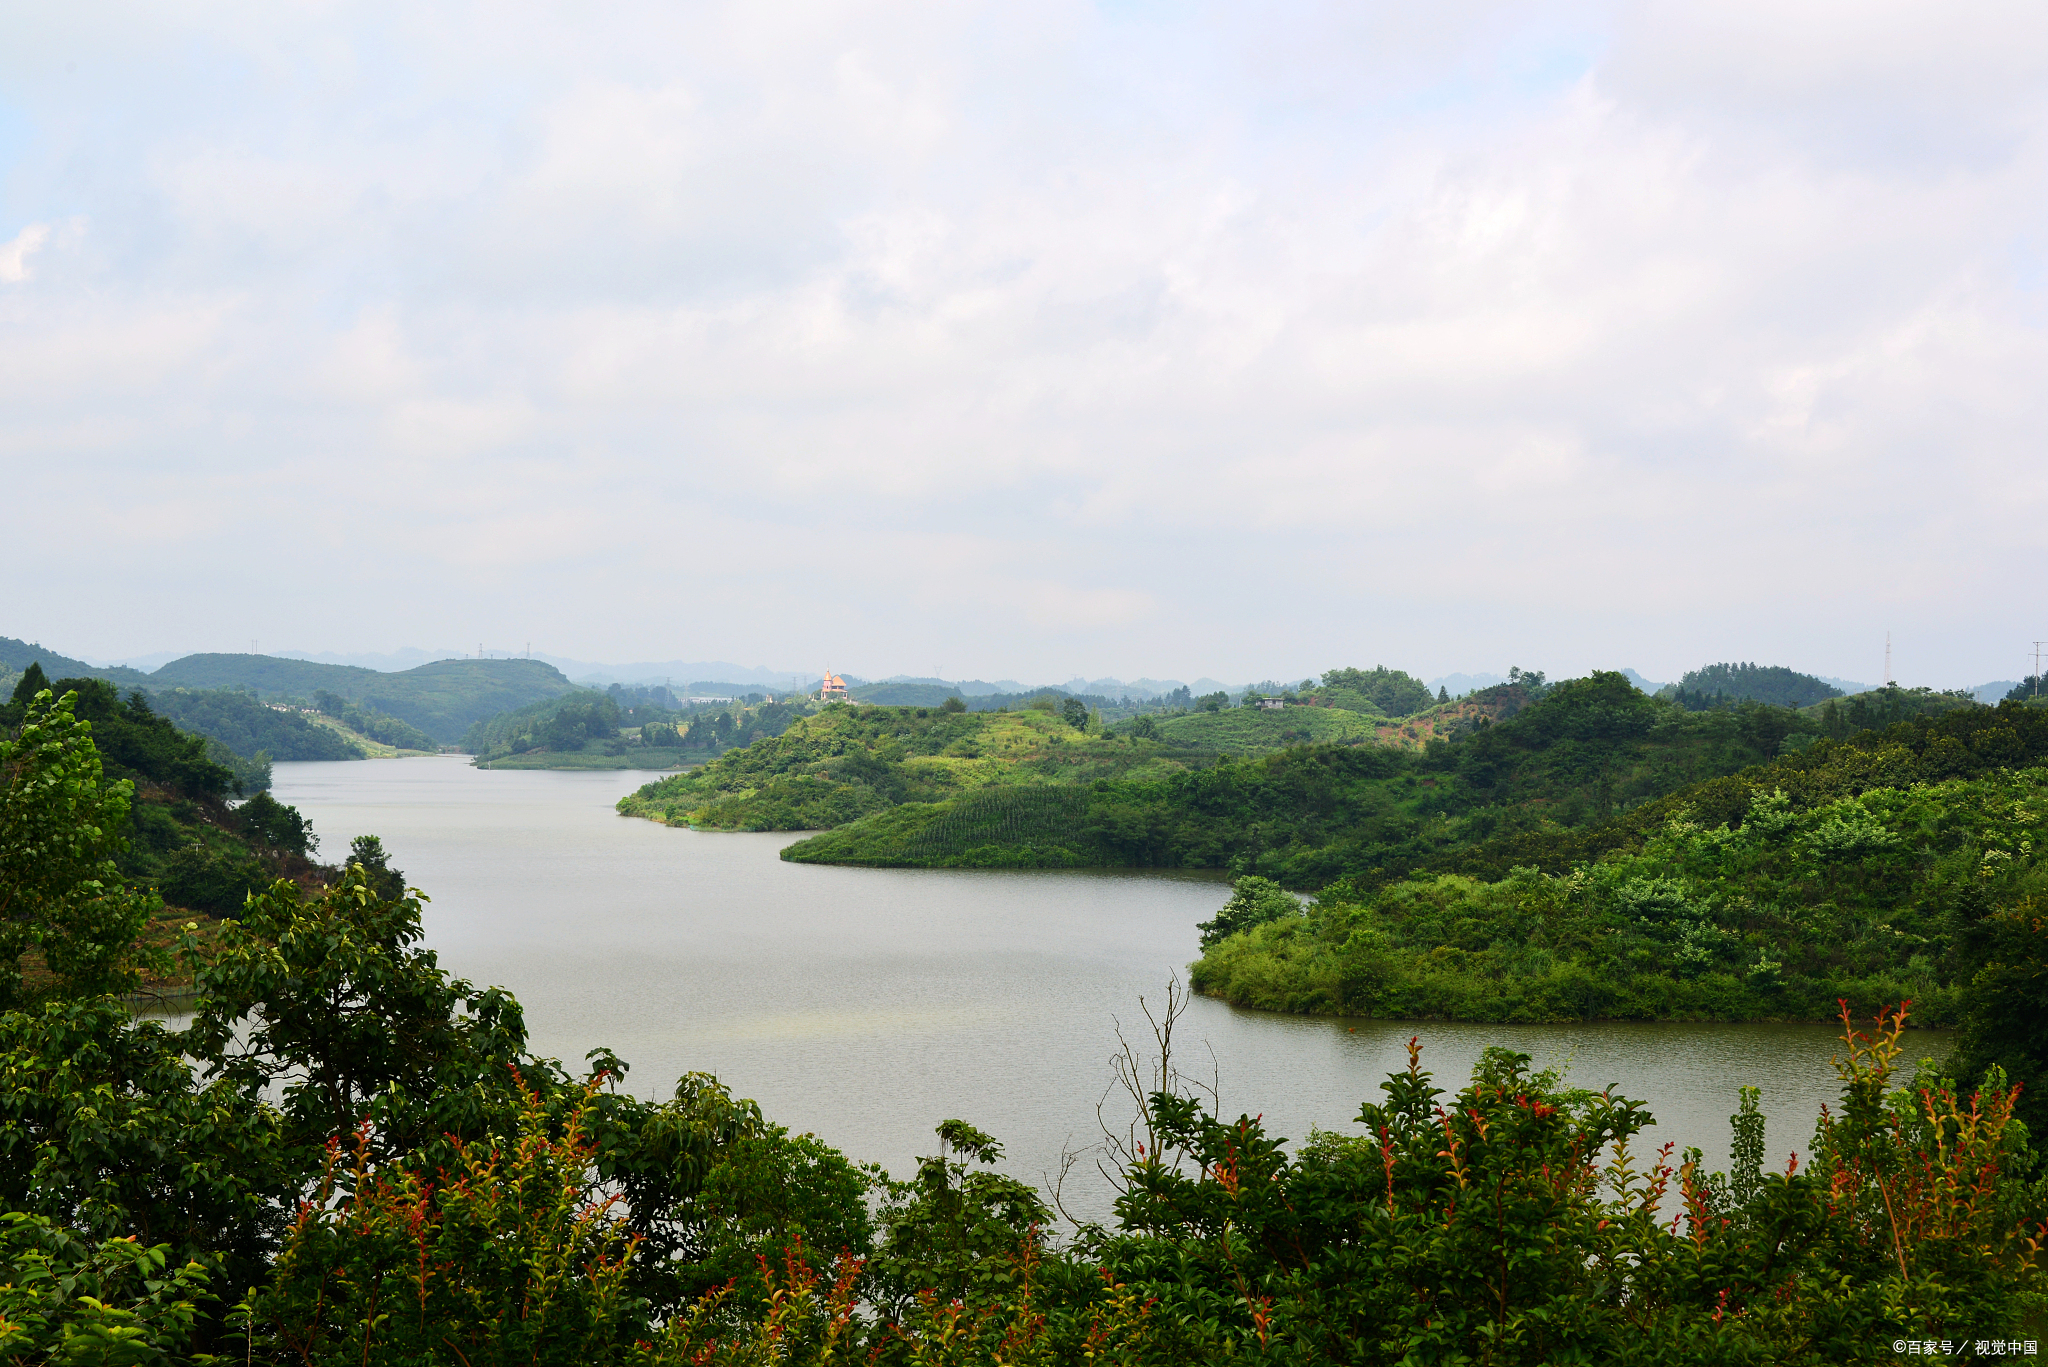 四川广安最美的天池湖:青山绿水间的明镜